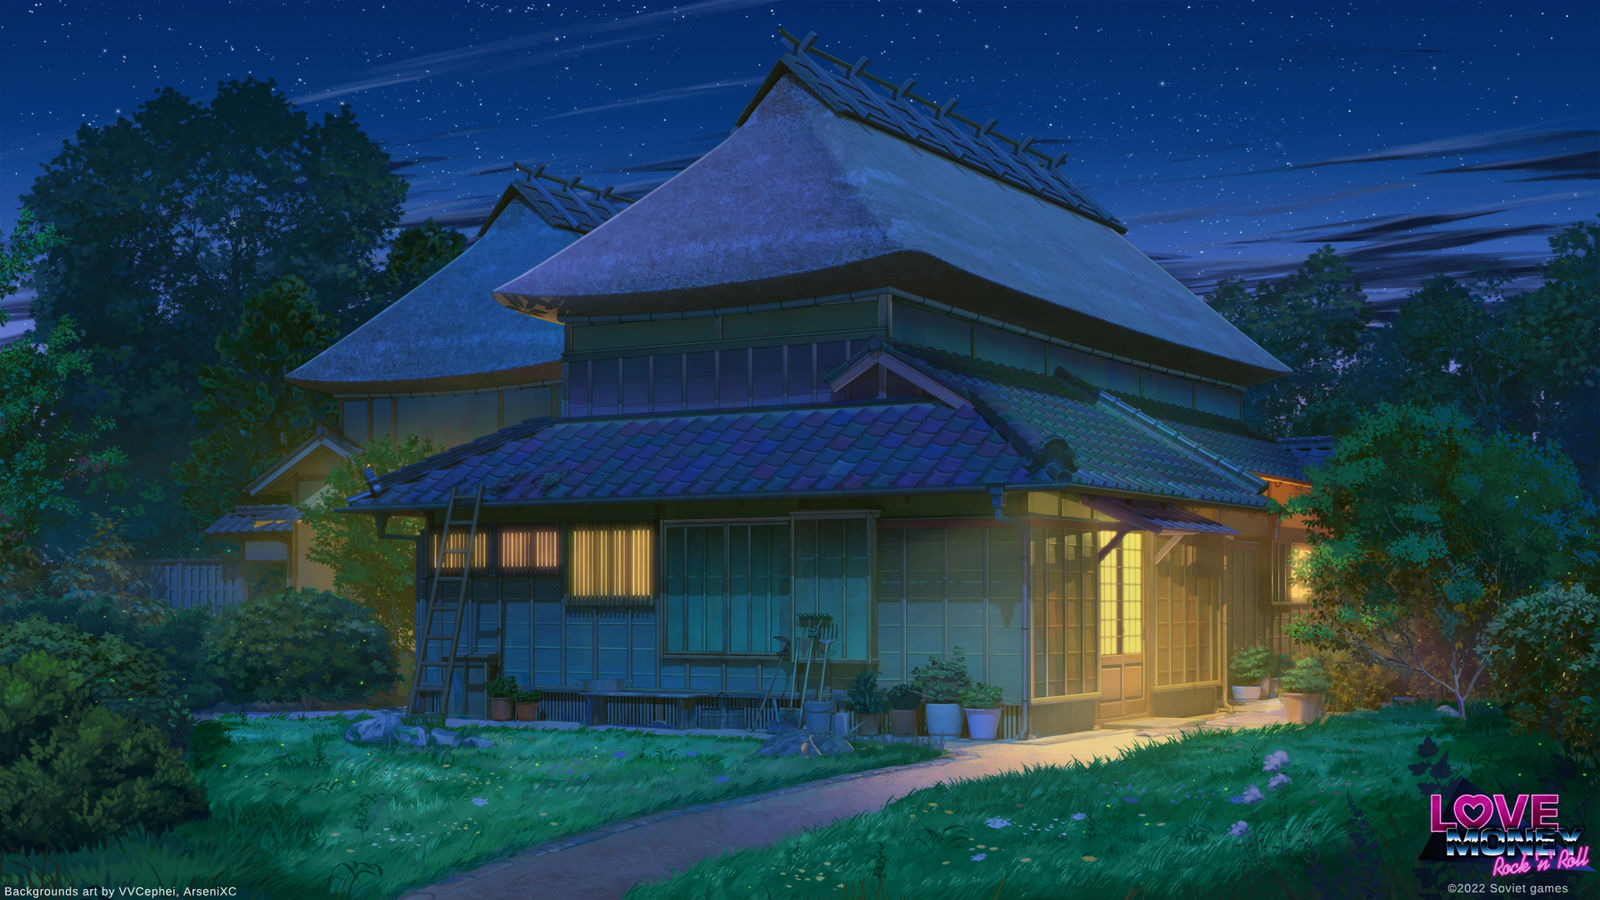 日本村的家夜-原创风景